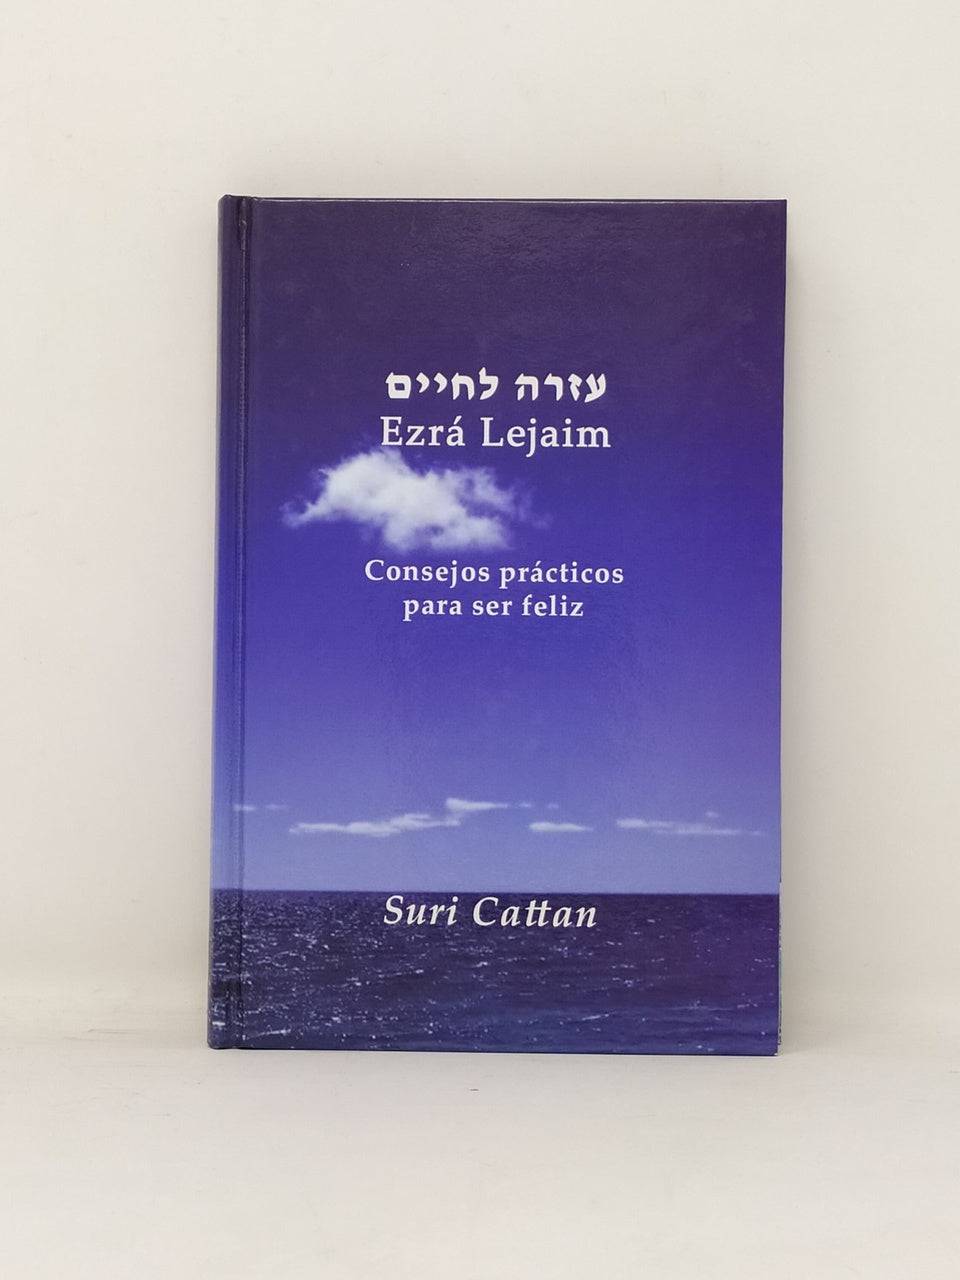 Ezra lejaim - Libreria Jerusalem Centro